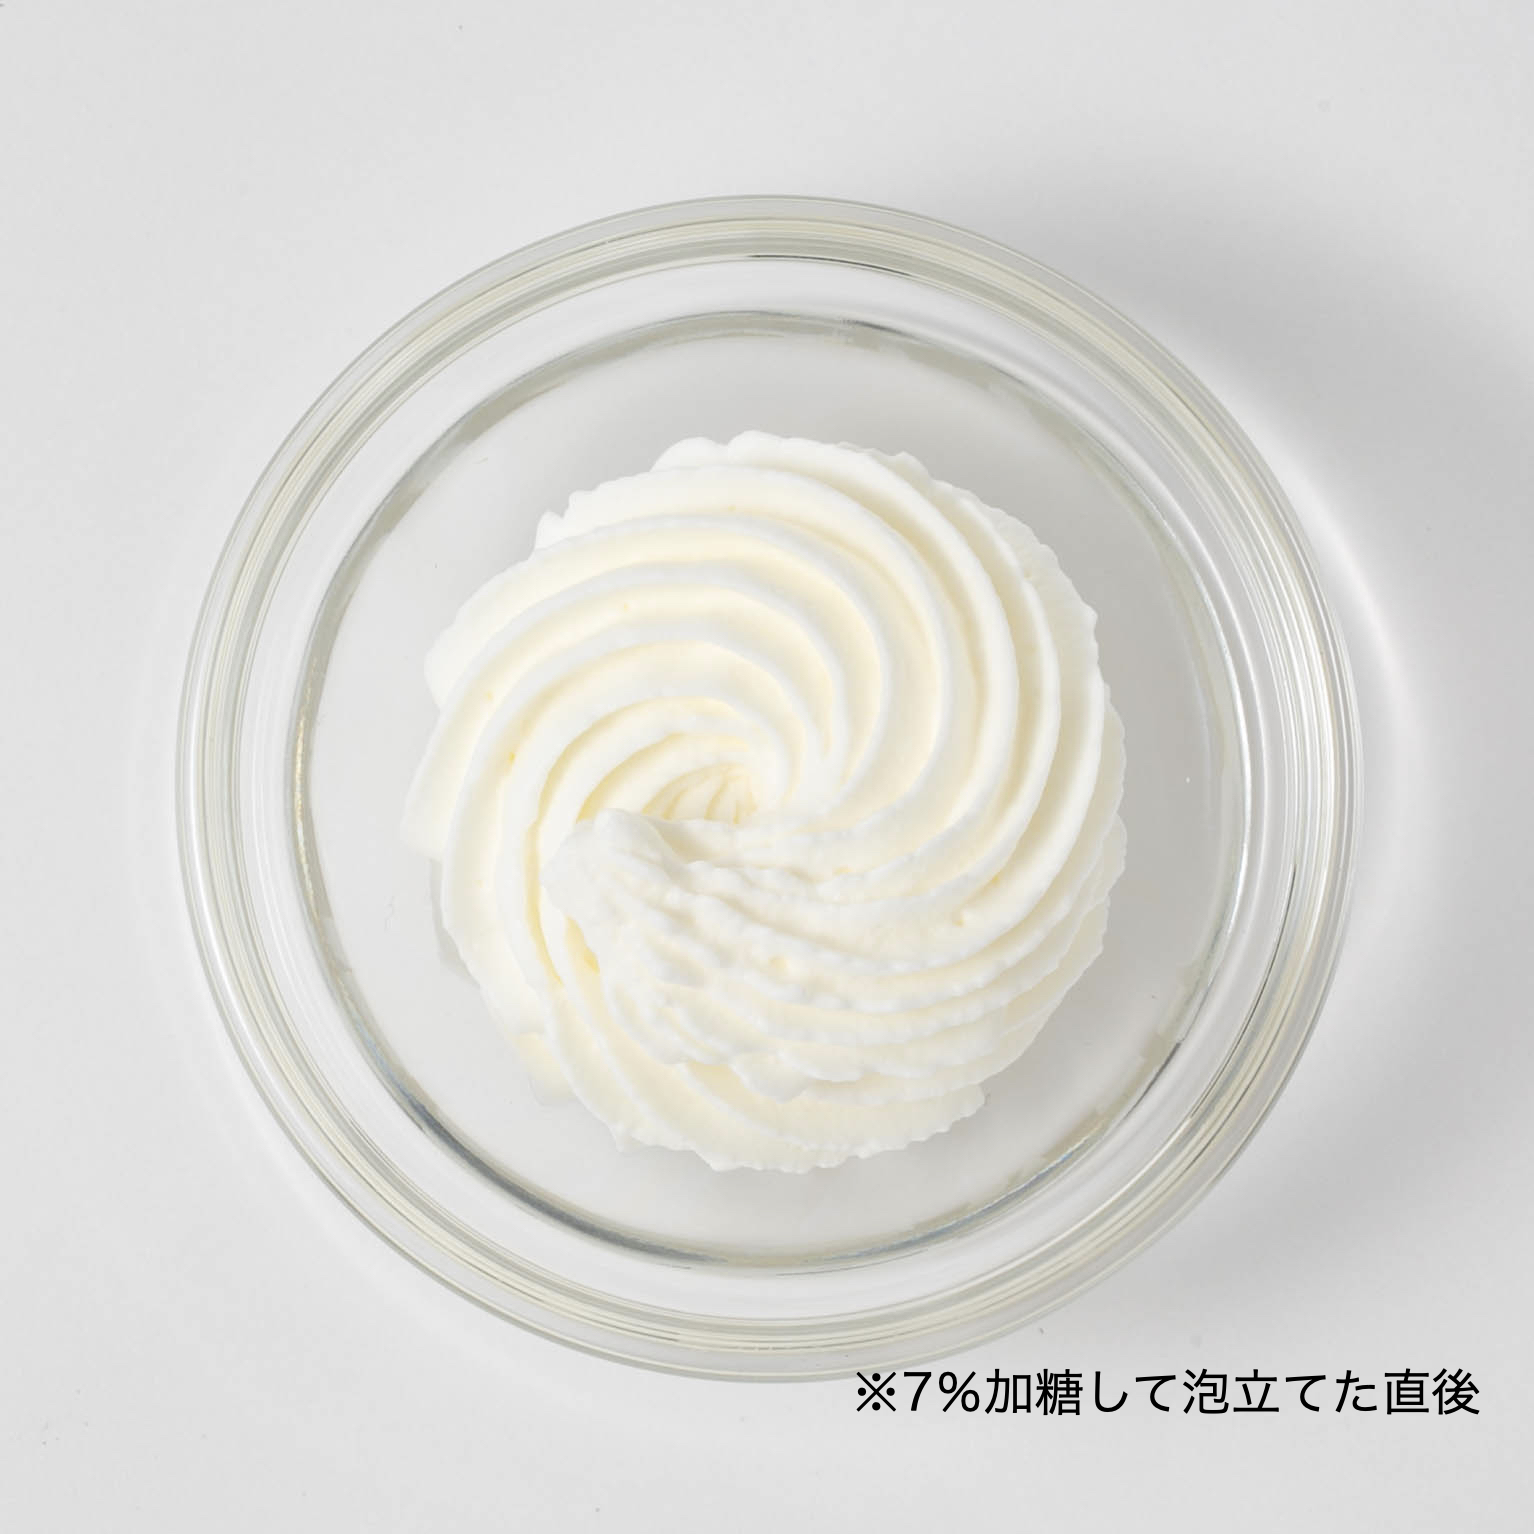 北海道フレッシュクリーム 35% 1,000